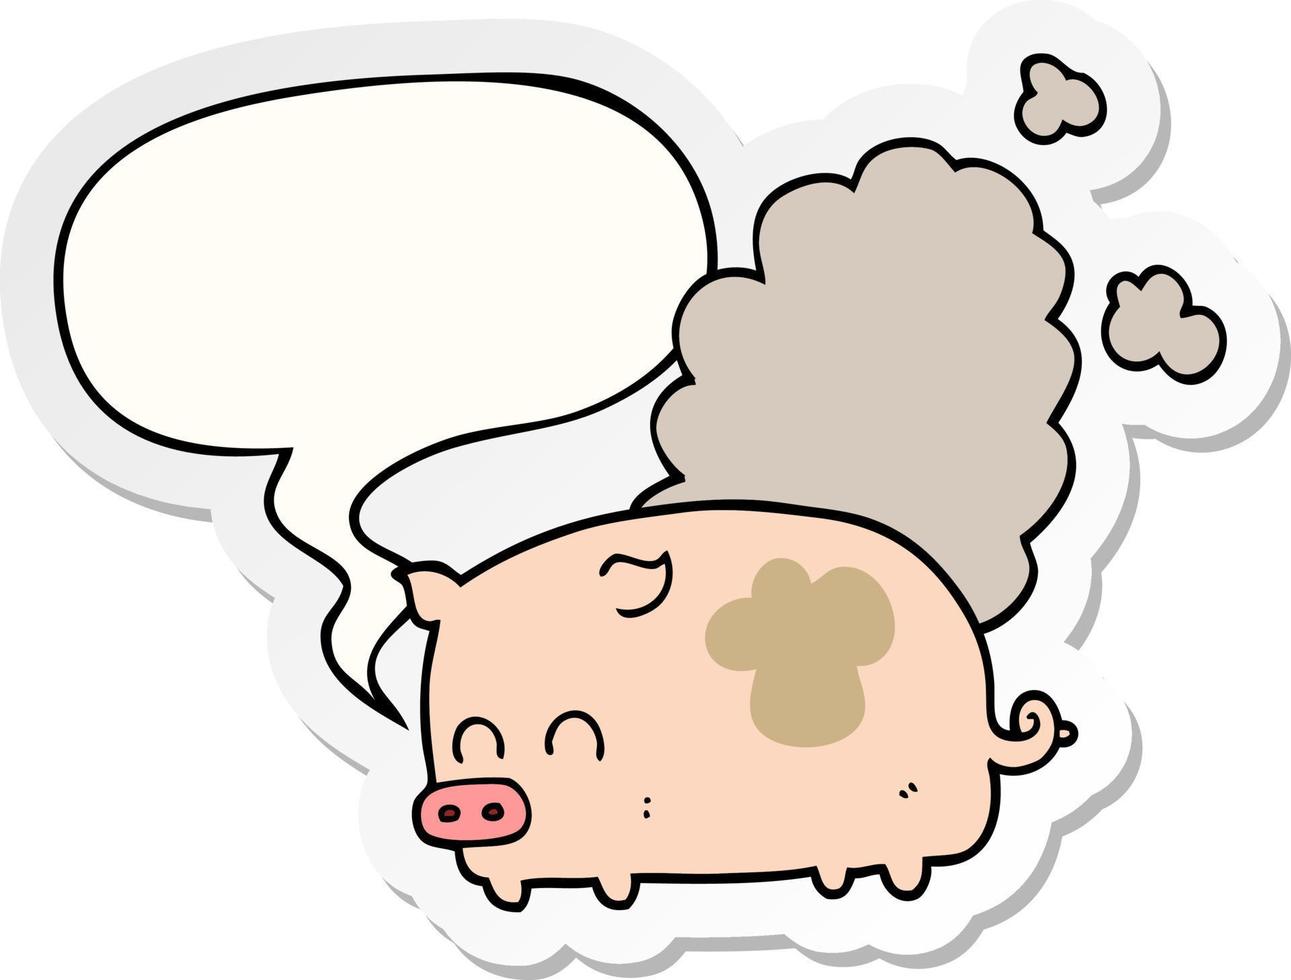 cochon malodorant de dessin animé et autocollant de bulle de dialogue vecteur